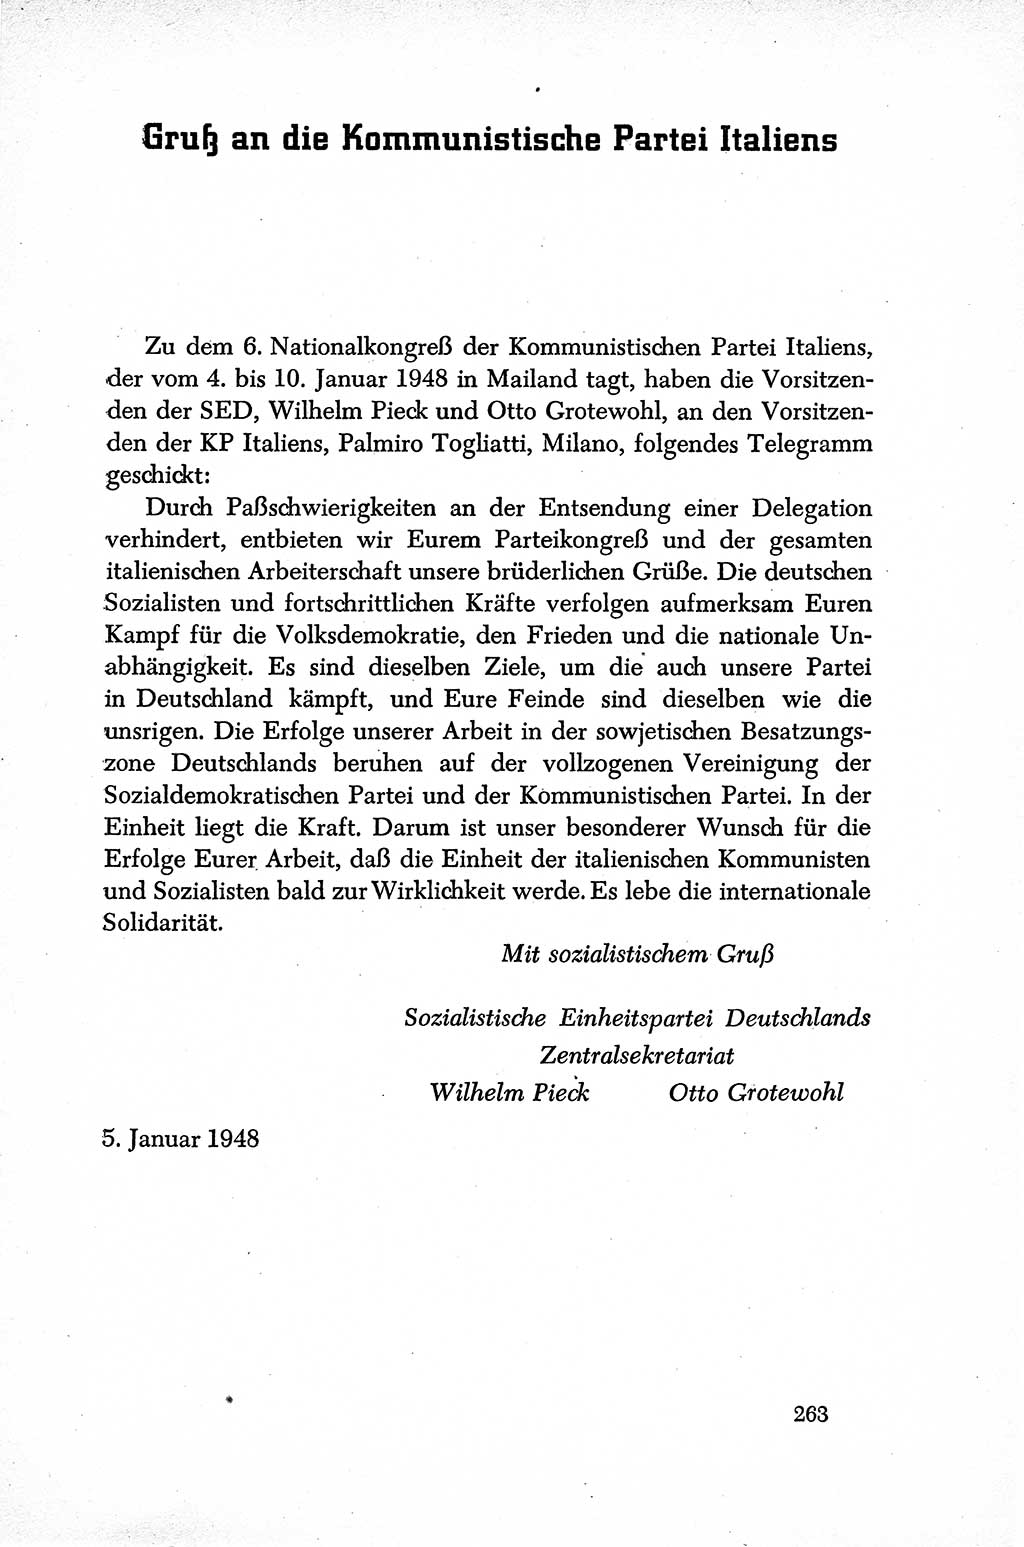 Dokumente der Sozialistischen Einheitspartei Deutschlands (SED) [Sowjetische Besatzungszone (SBZ) Deutschlands] 1946-1948, Seite 263 (Dok. SED SBZ Dtl. 1946-1948, S. 263)